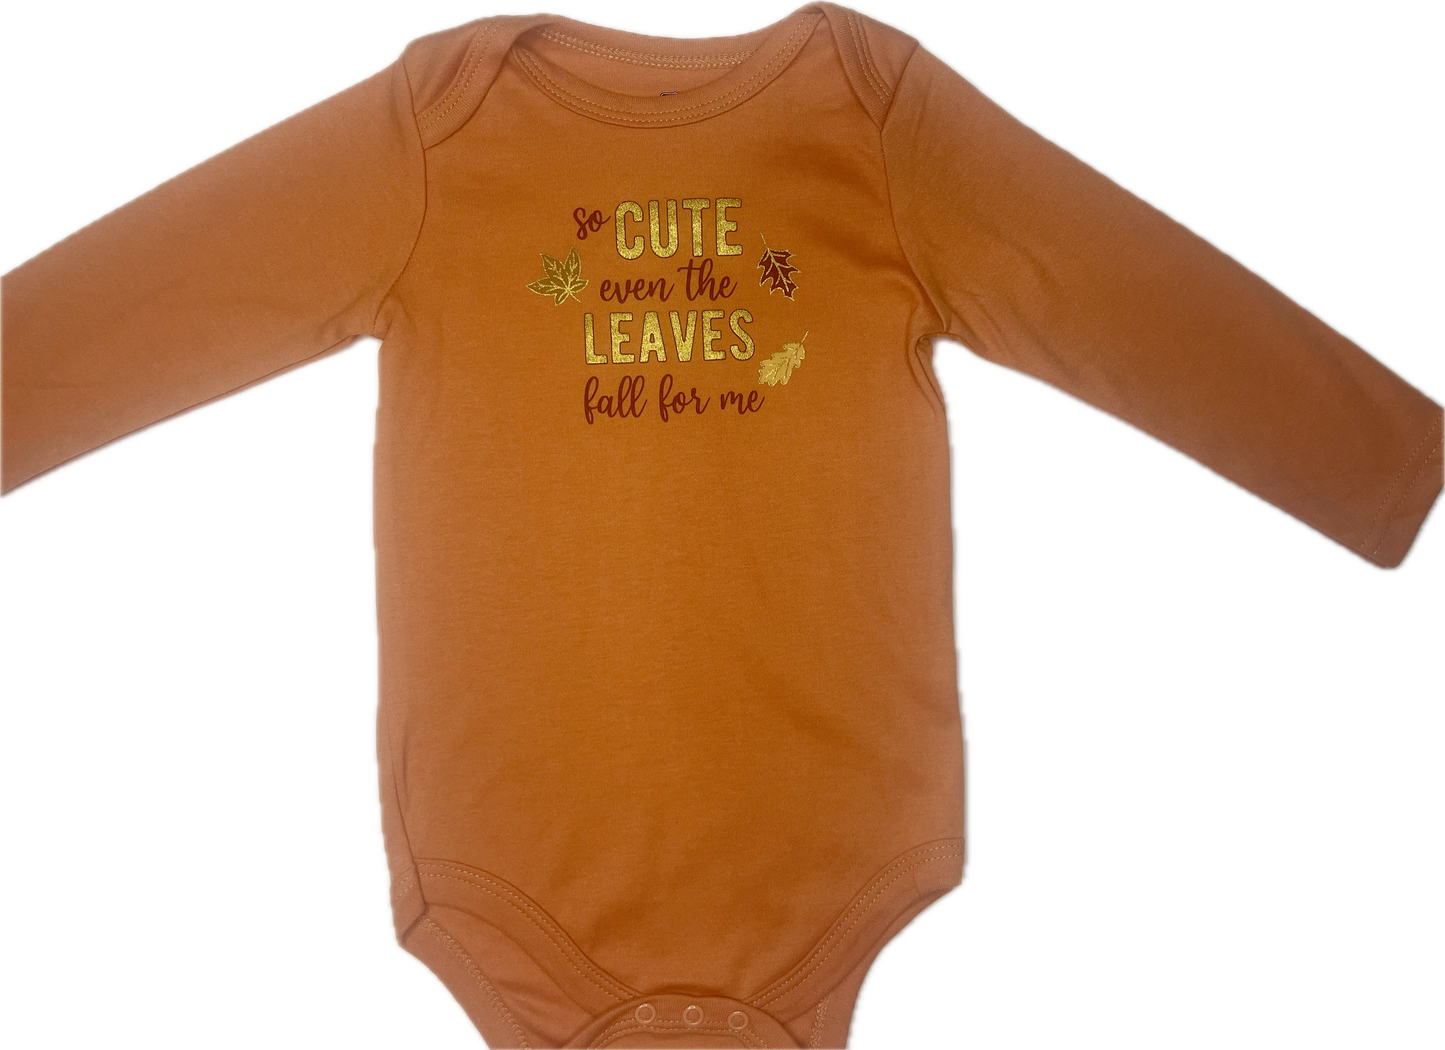 Body manga larga otoño naranja letras doradas cute 18 meses